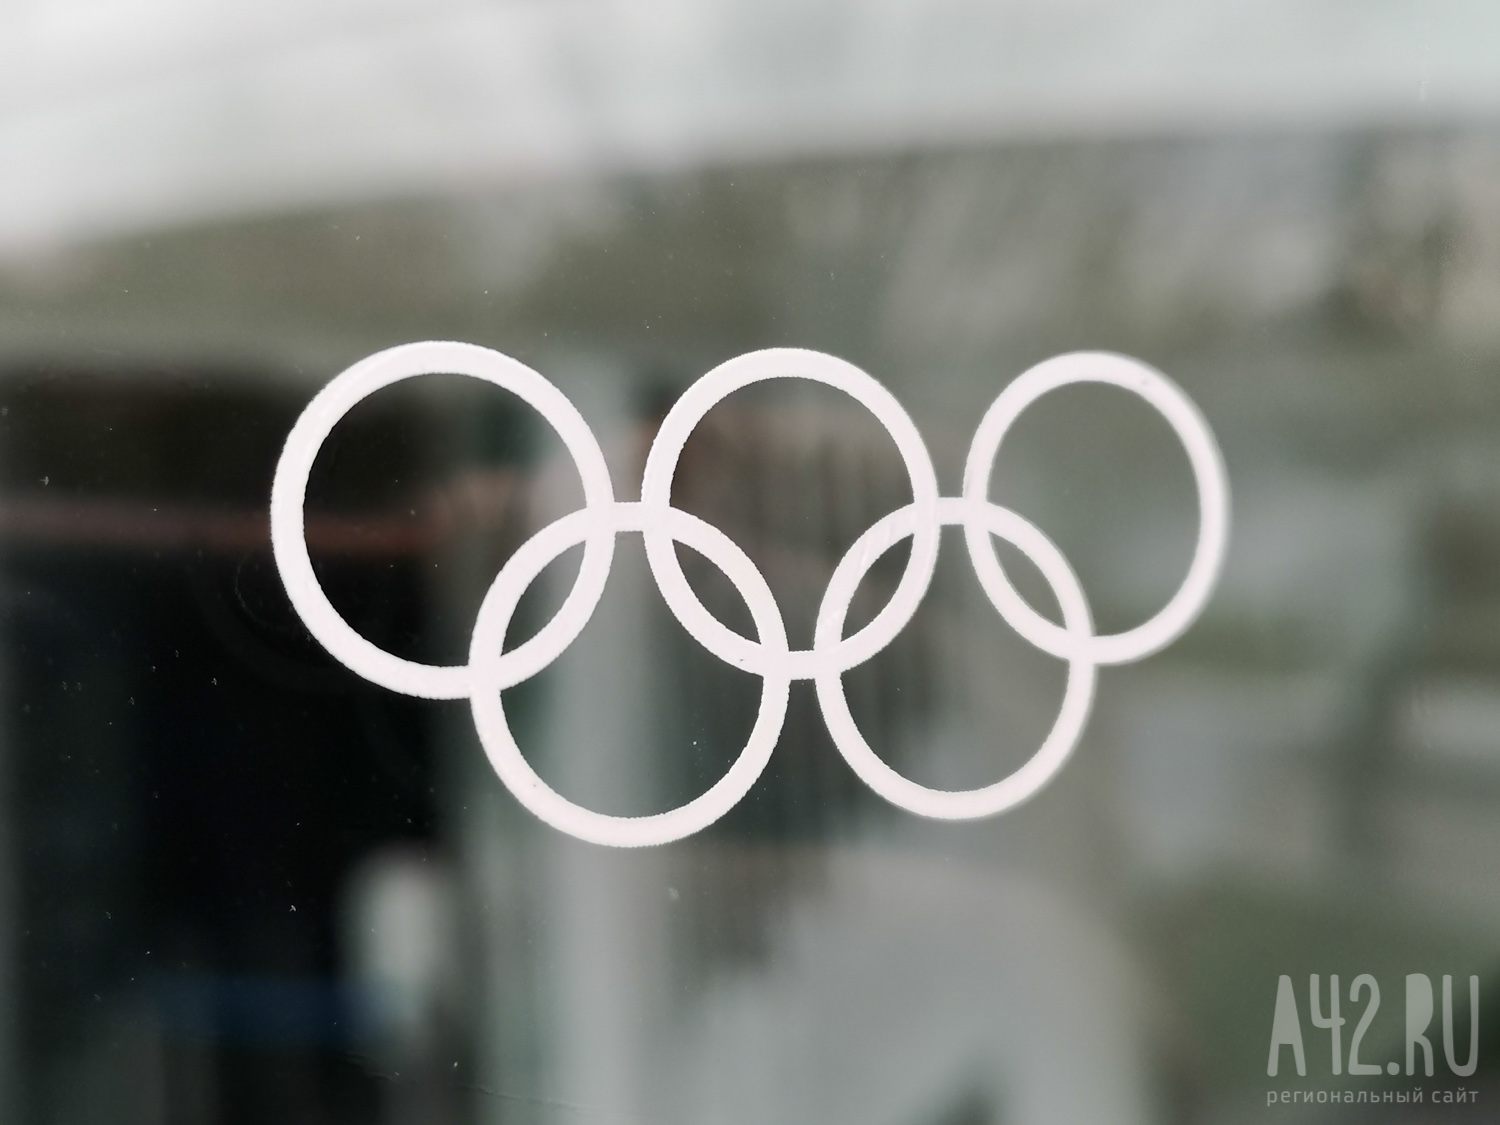 В WADA осудили решение CAS о допуске фигуристки Валиевой на Олимпиаду